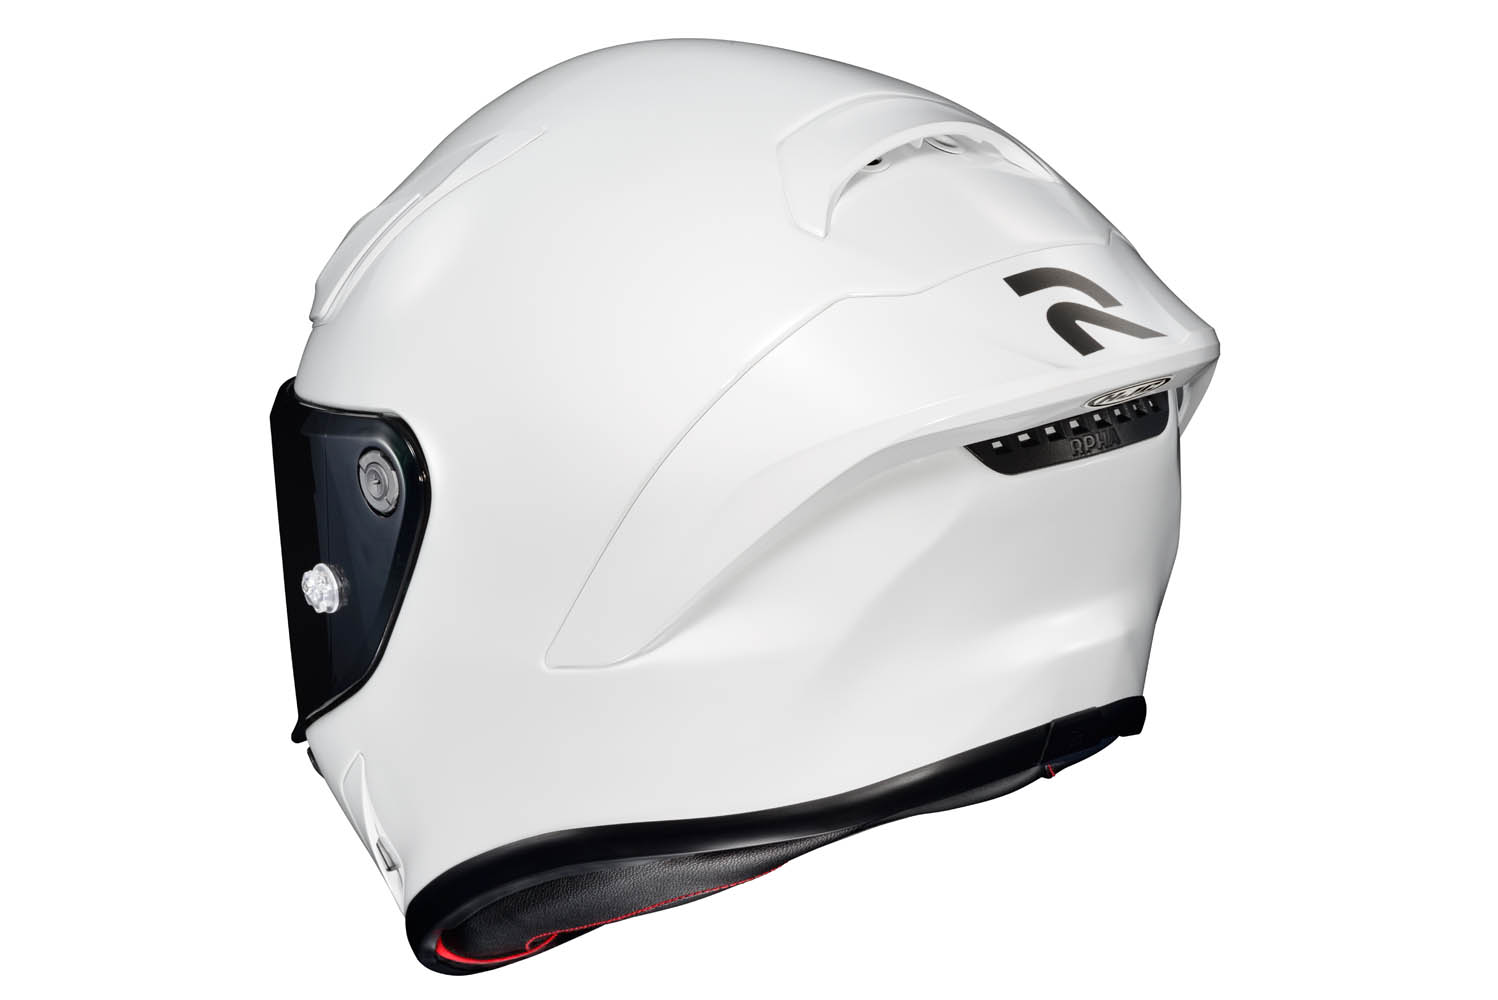 HJC RPHA 1 helmet — Gear Review